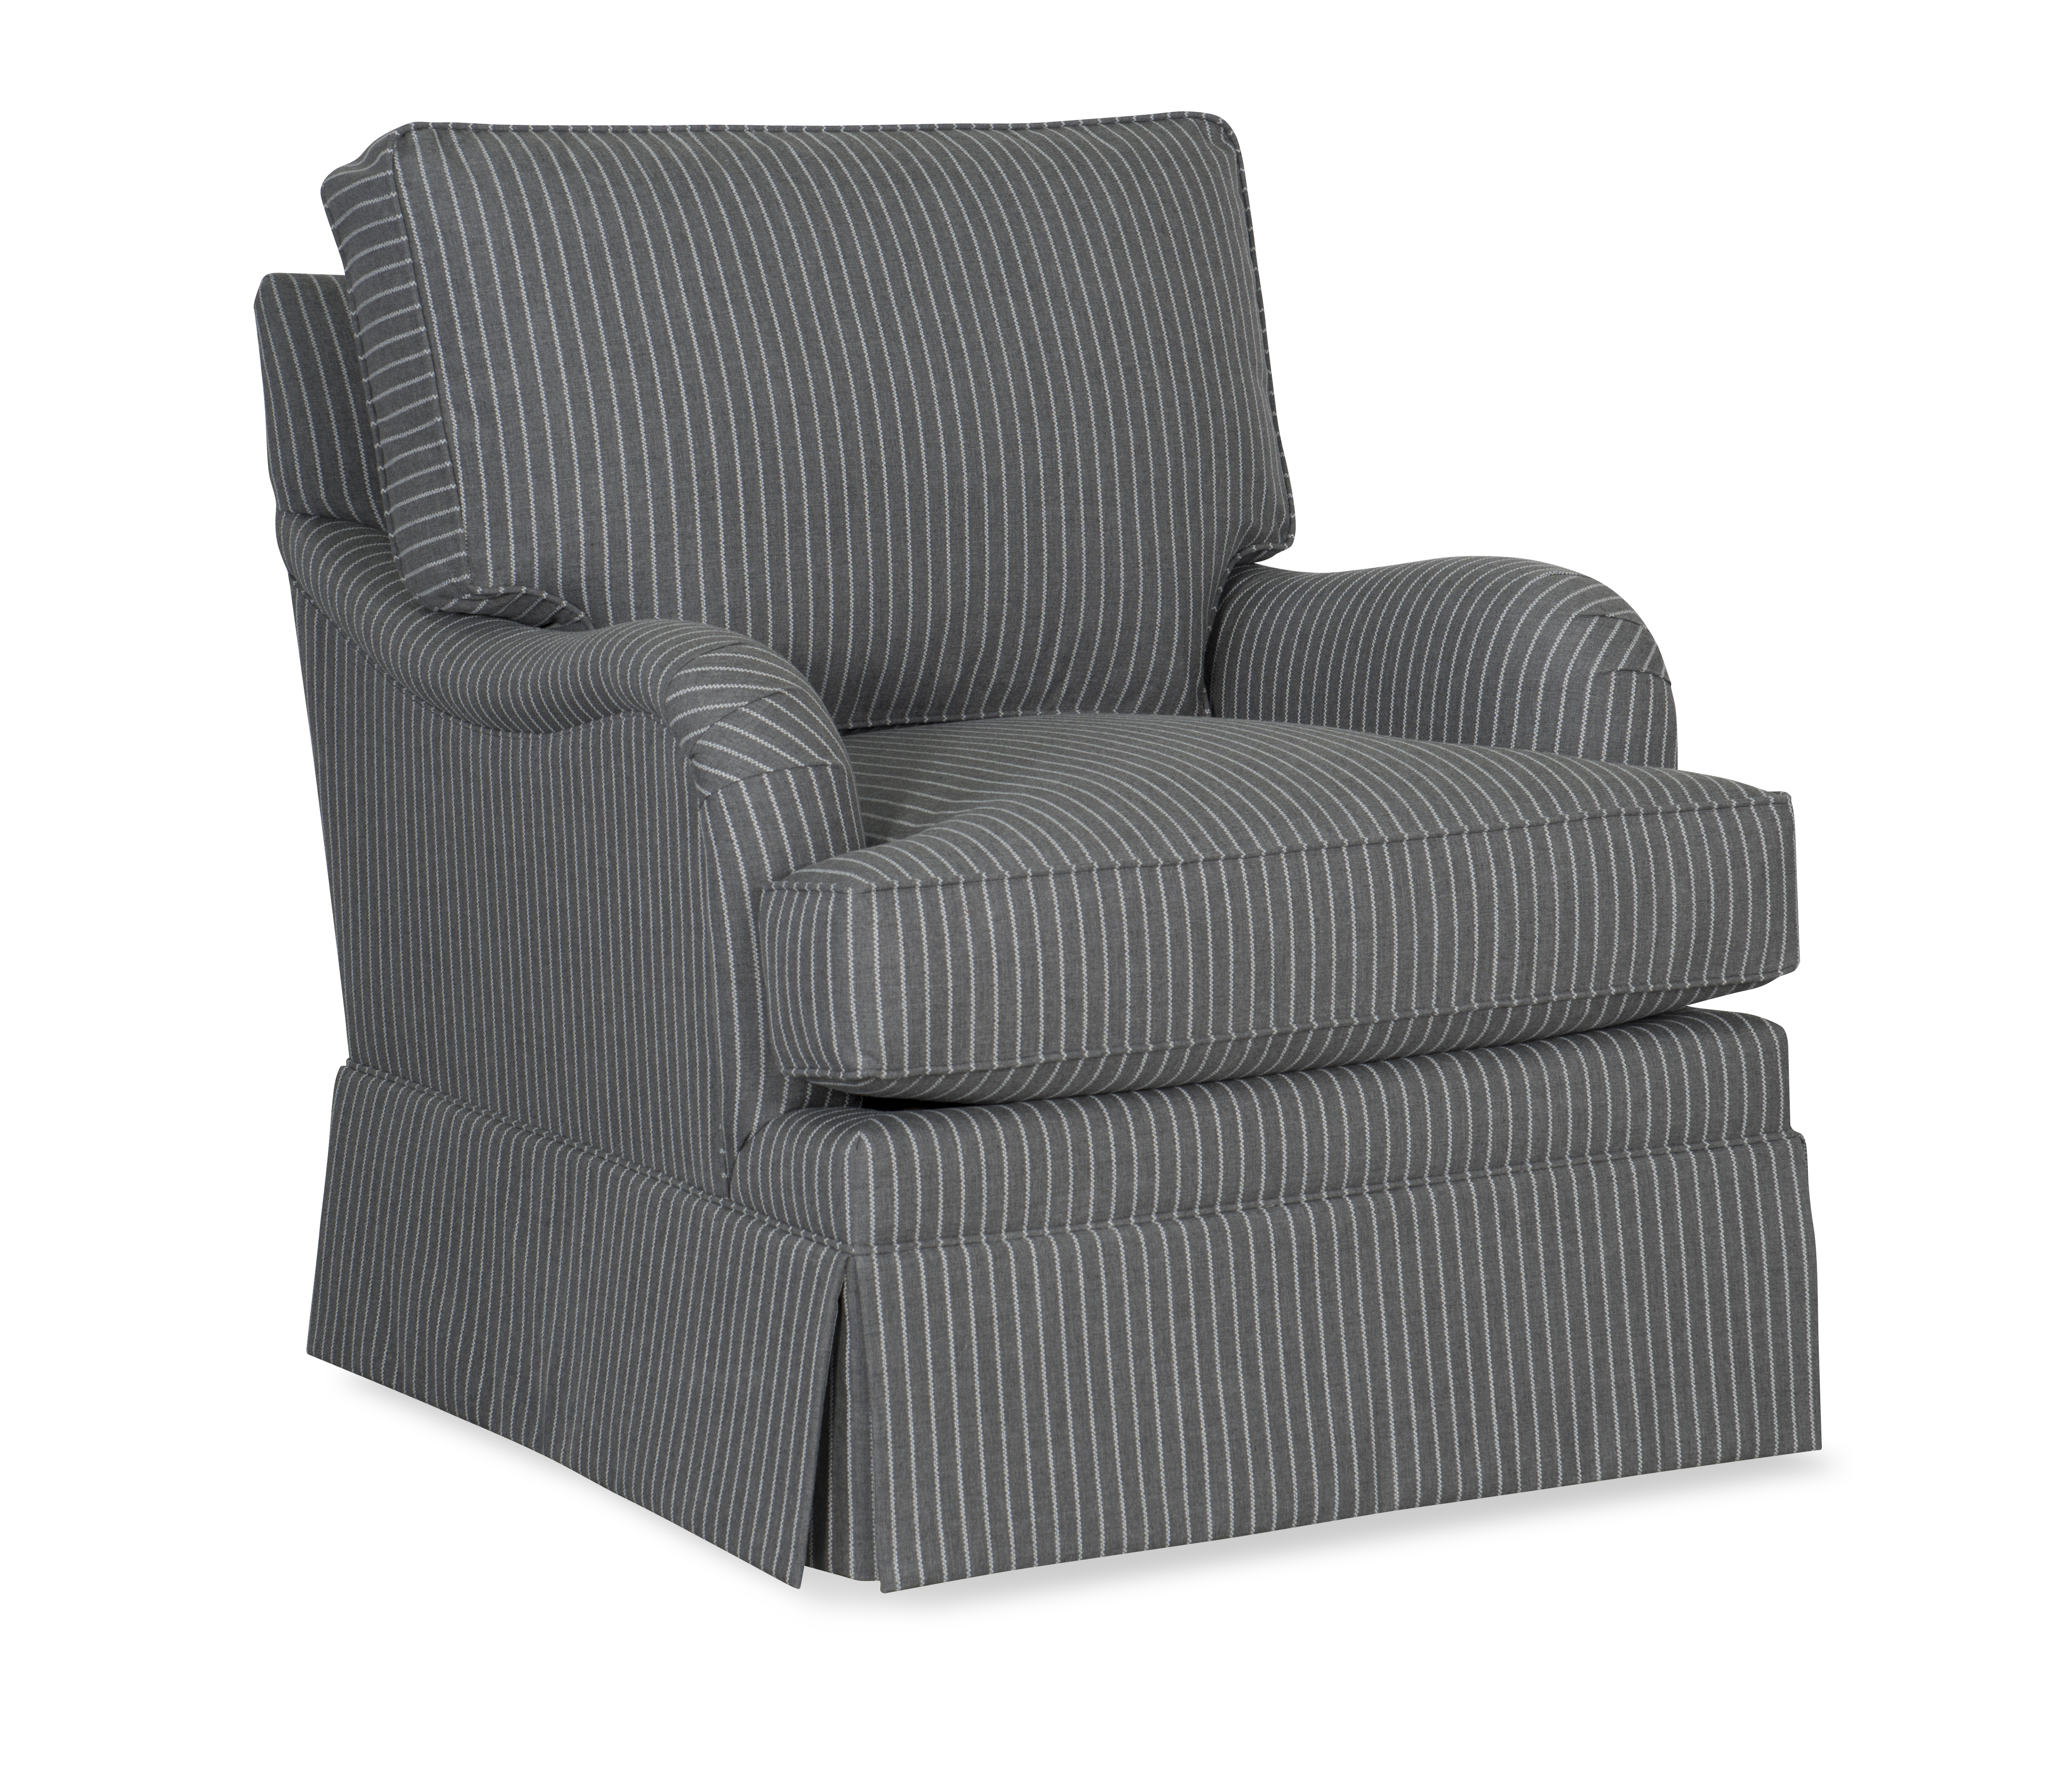 CR Laine CD8805 E Custom Design English armchair